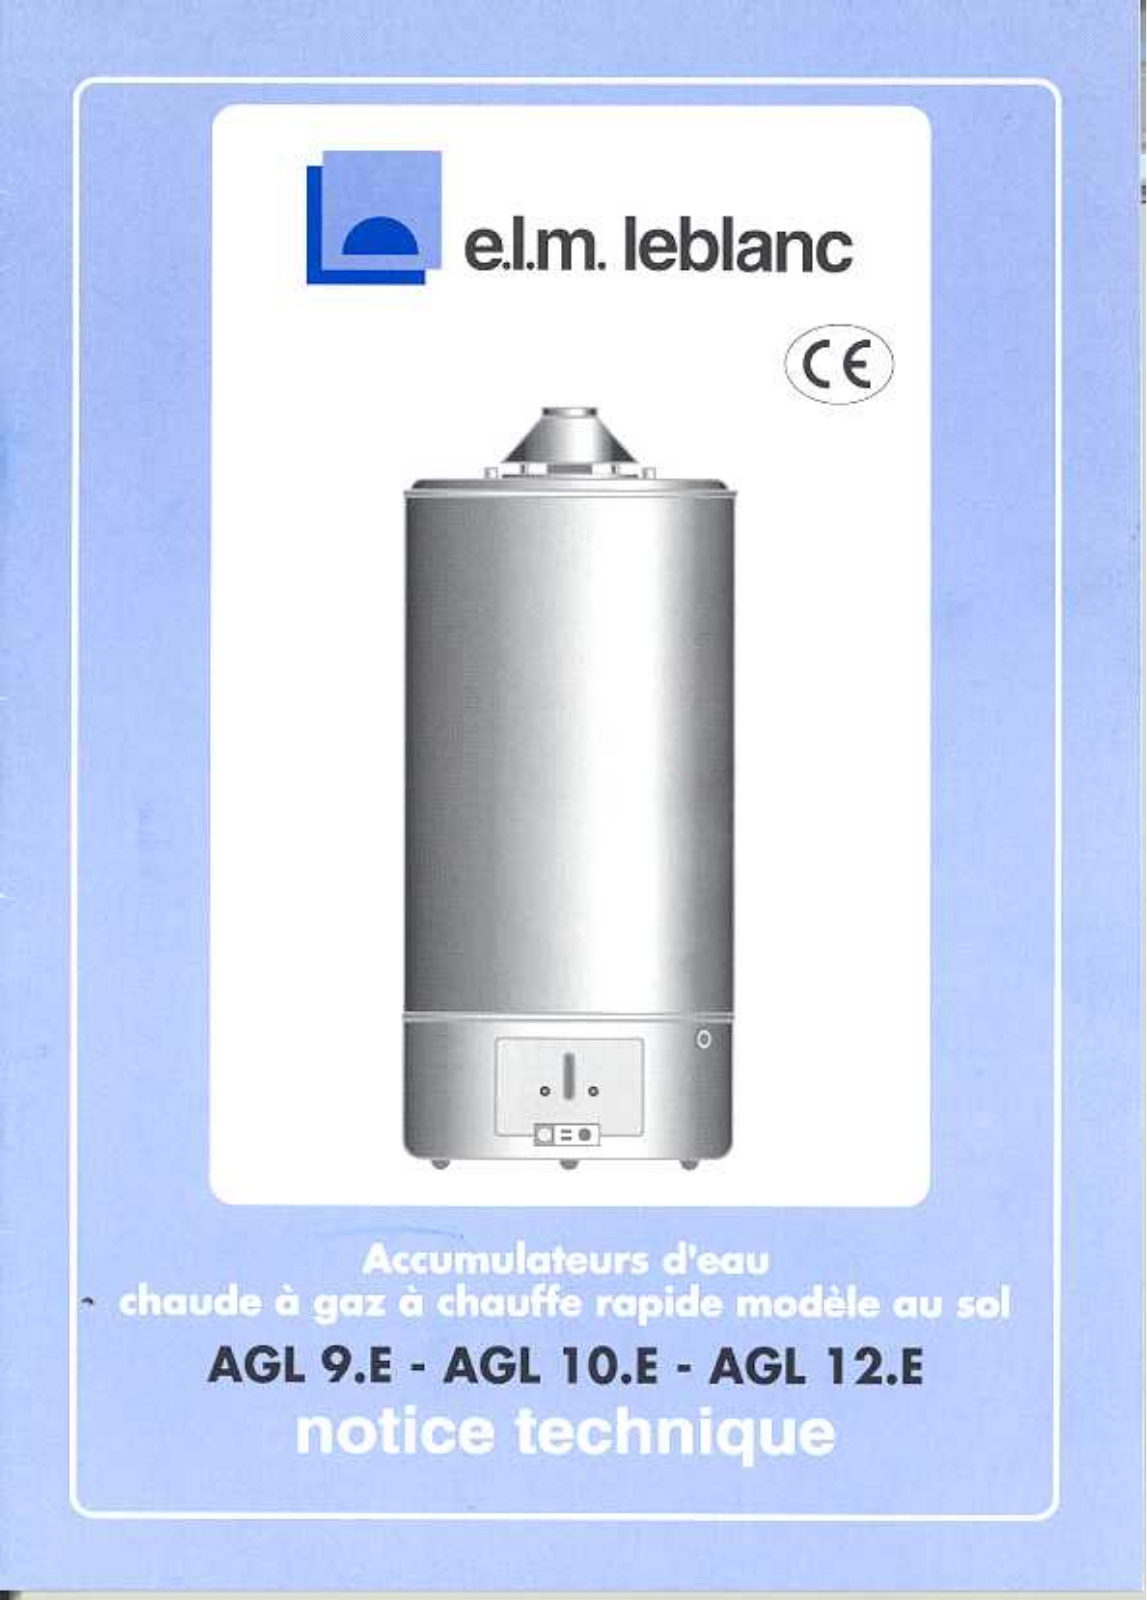 ELM LEBLANC AGL 9.E, AGL 10.E, AGL 12.E User Manual